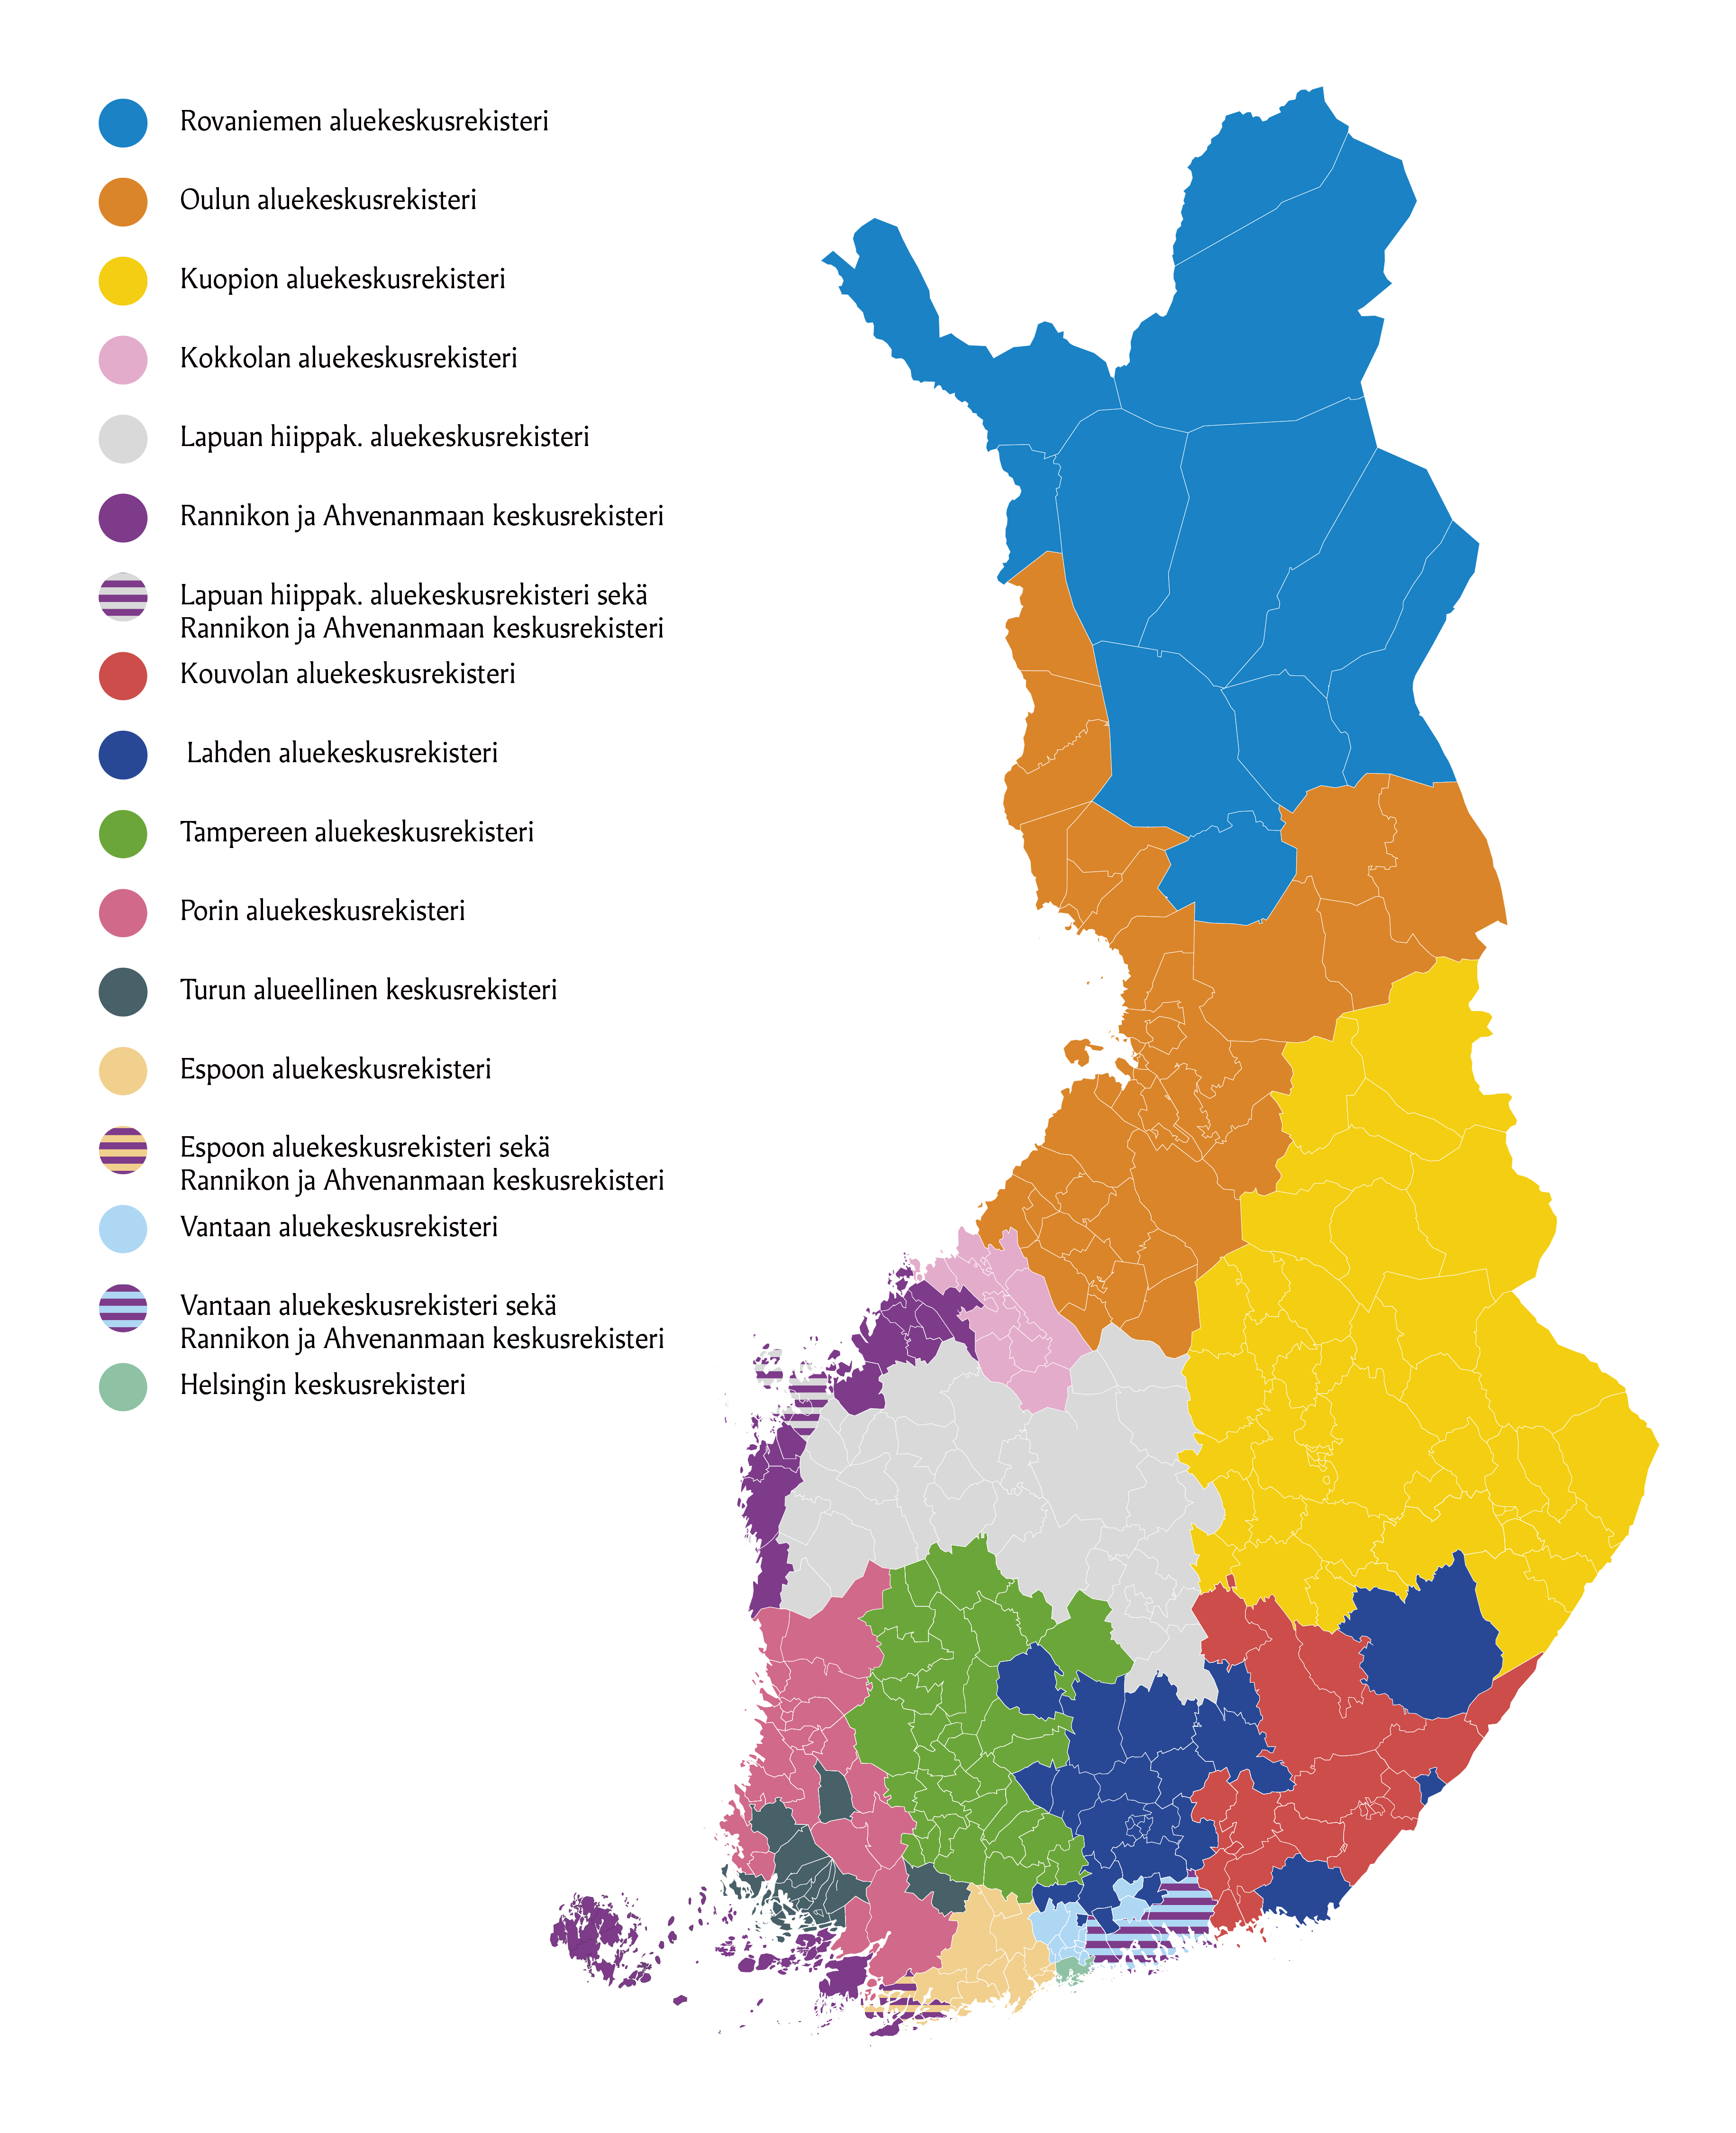 Aluekeskusrekisterit Suomen kartalla. Vastaavat tiedot löytyvät kuvan alla olevasta taulukosta.